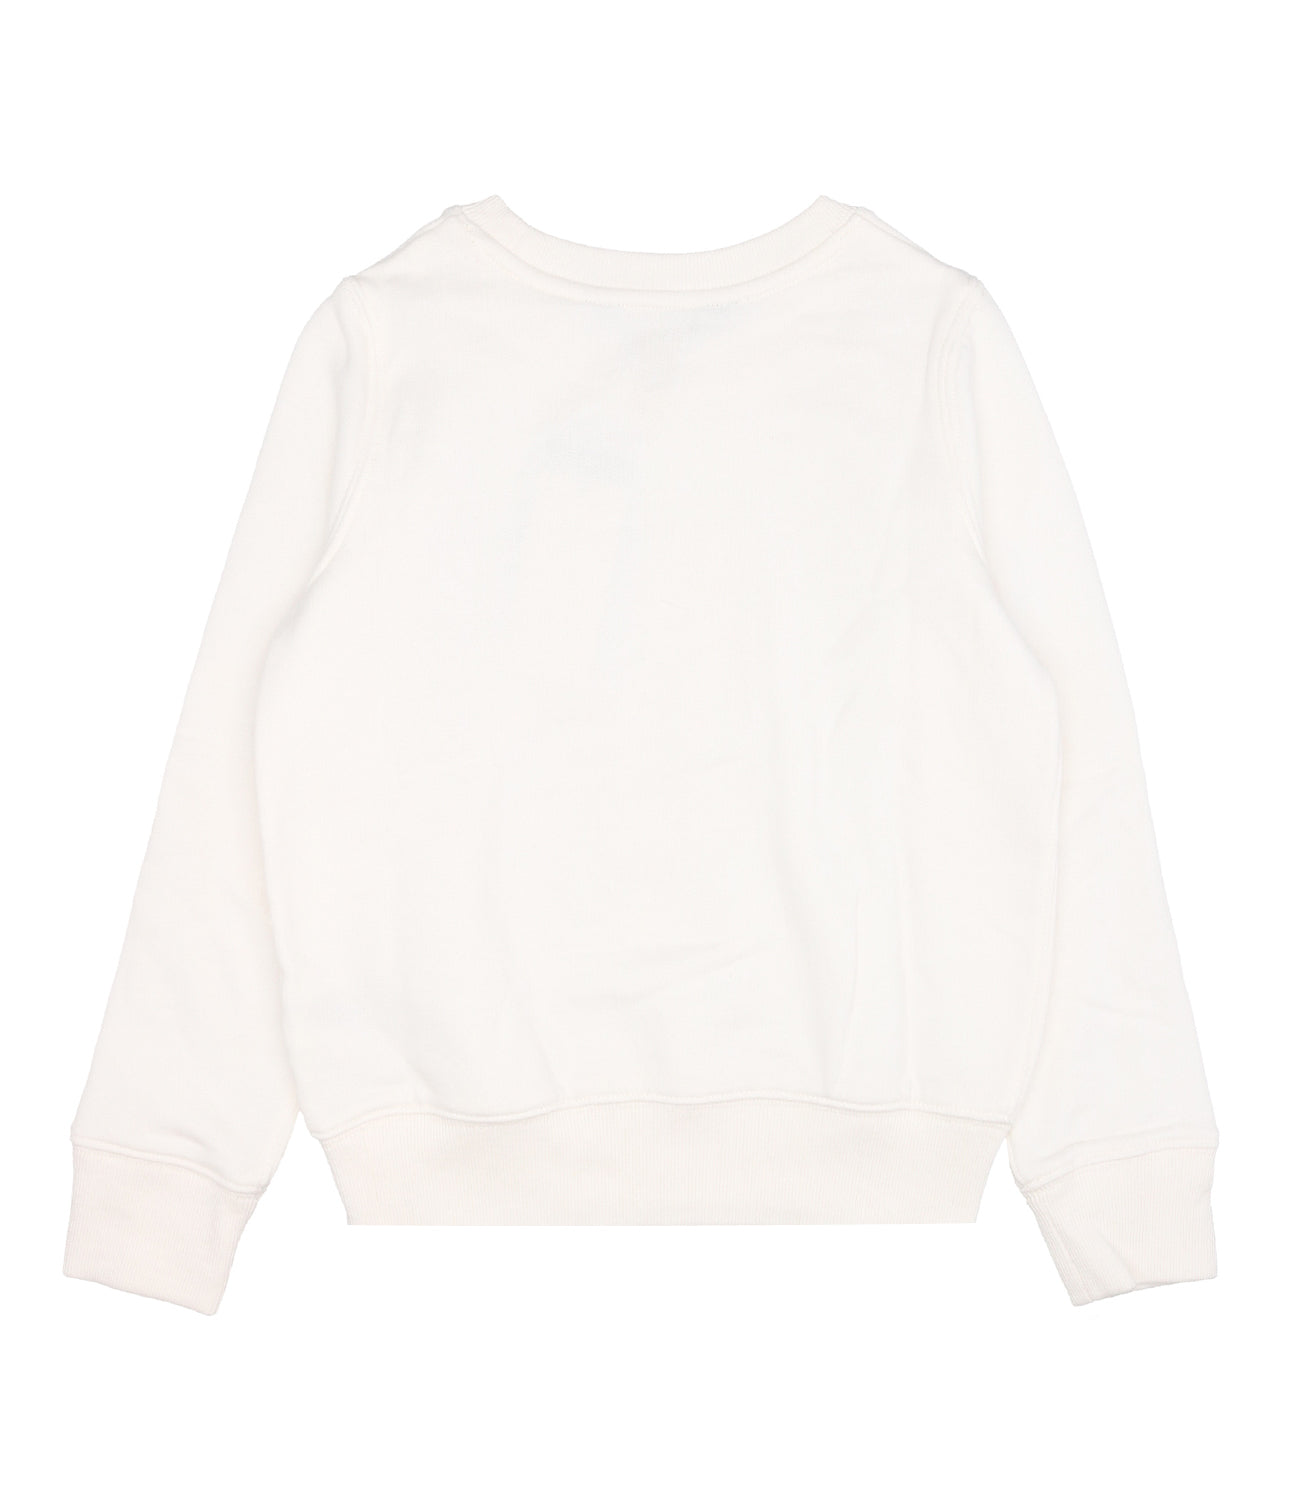 Ralph Lauren Childrenswear ! Sweatshirt White